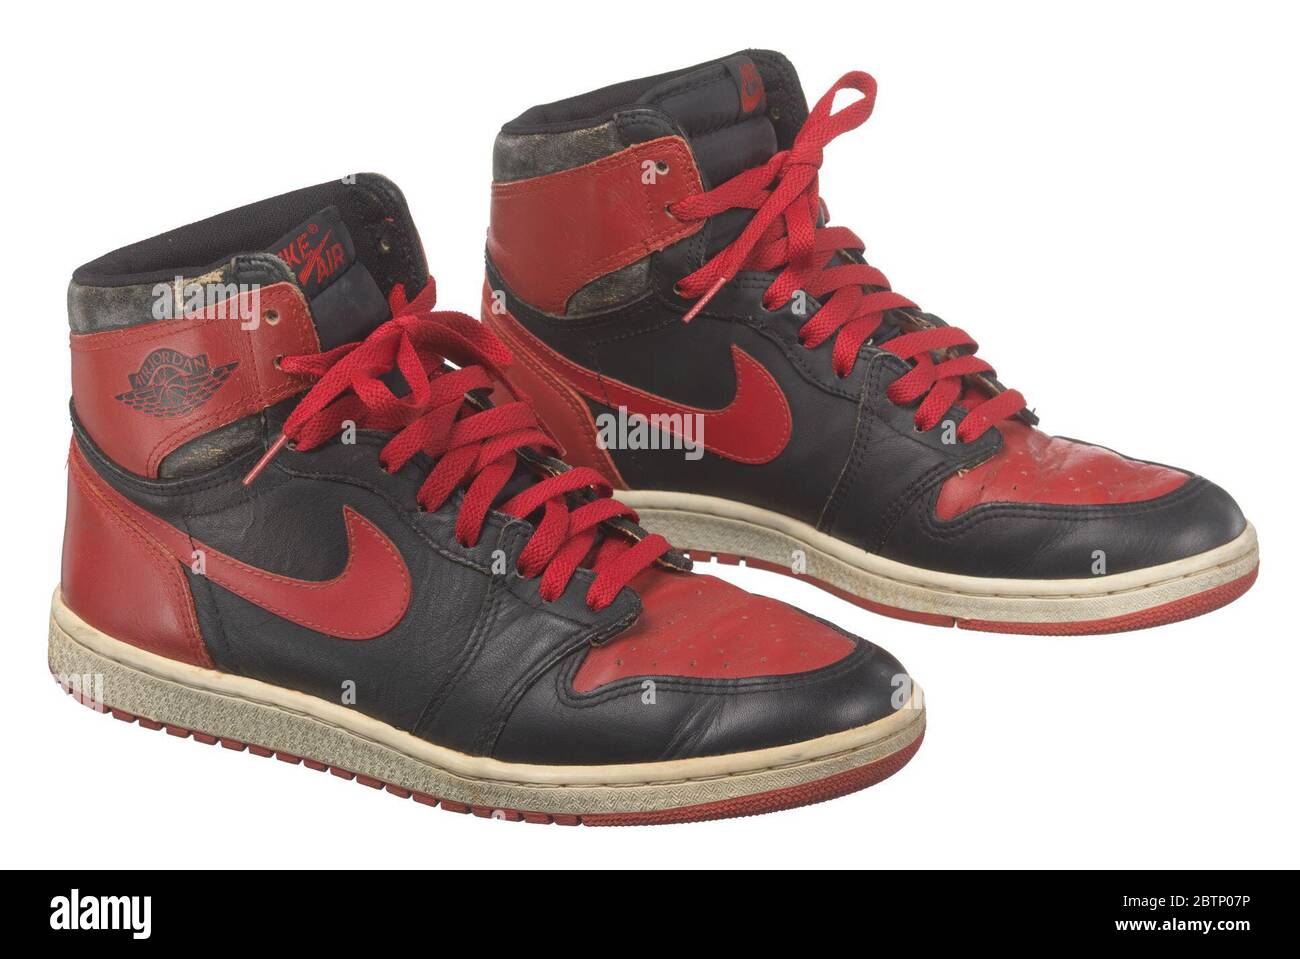 Paire de sneakers montantes Air Jordan I rouges et noires fabriquées par  Nike. Une paire de sneakers montantes Air Jordan I rouge et noire de marque  Nike, également connues sous le nom